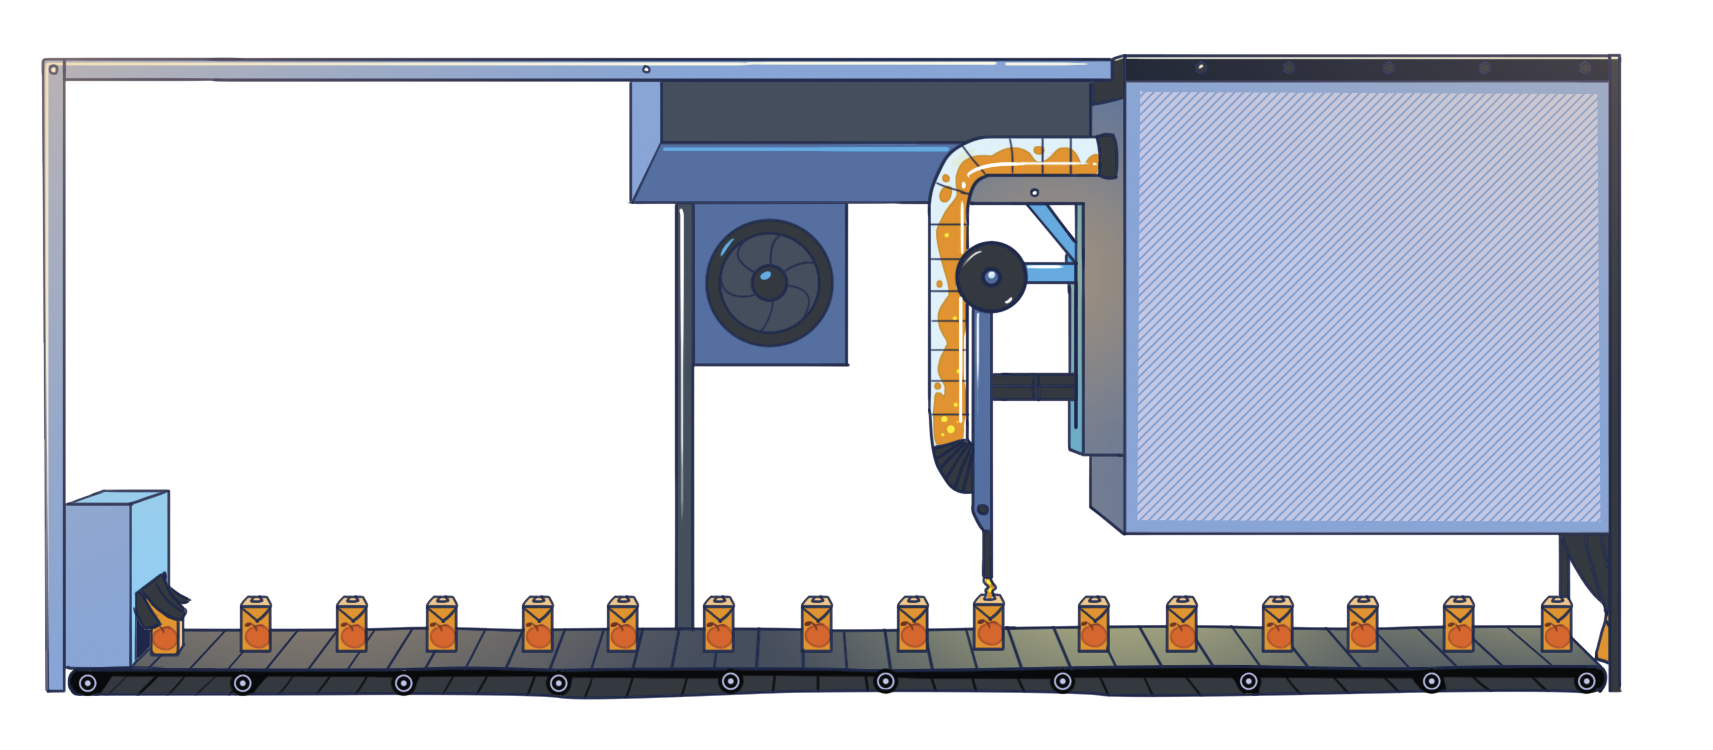 Ilustração. Cenário de uma fábrica. À esquerda, máquina para envaze de suco. Abaixo, esteira com embalagens de sucos sendo preenchidas.